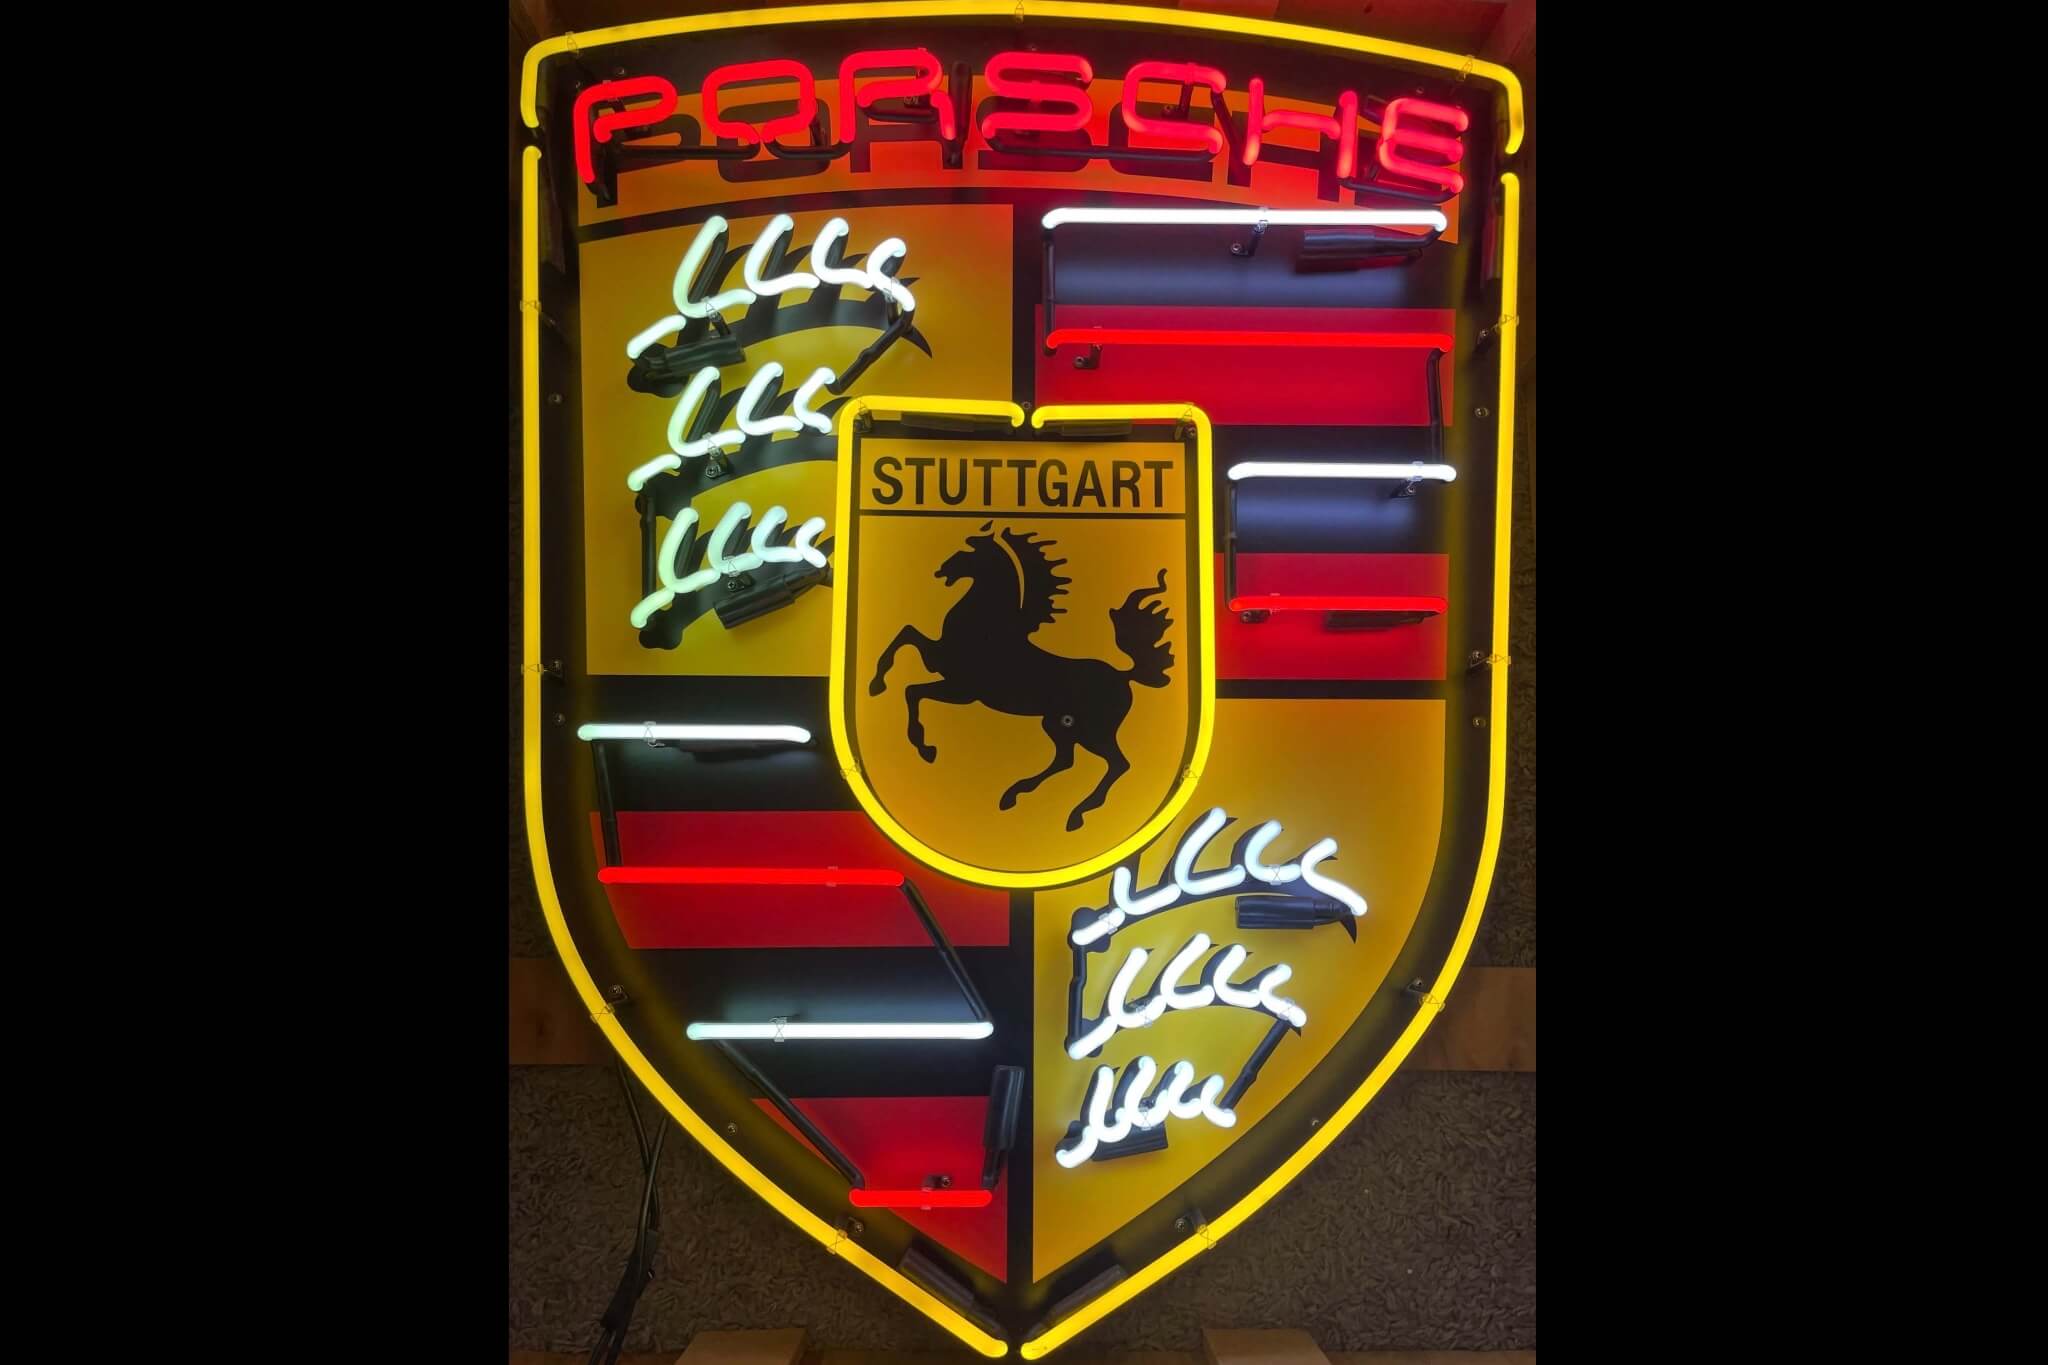 DT: Neon Porsche Crest (40" x 30" x 5")